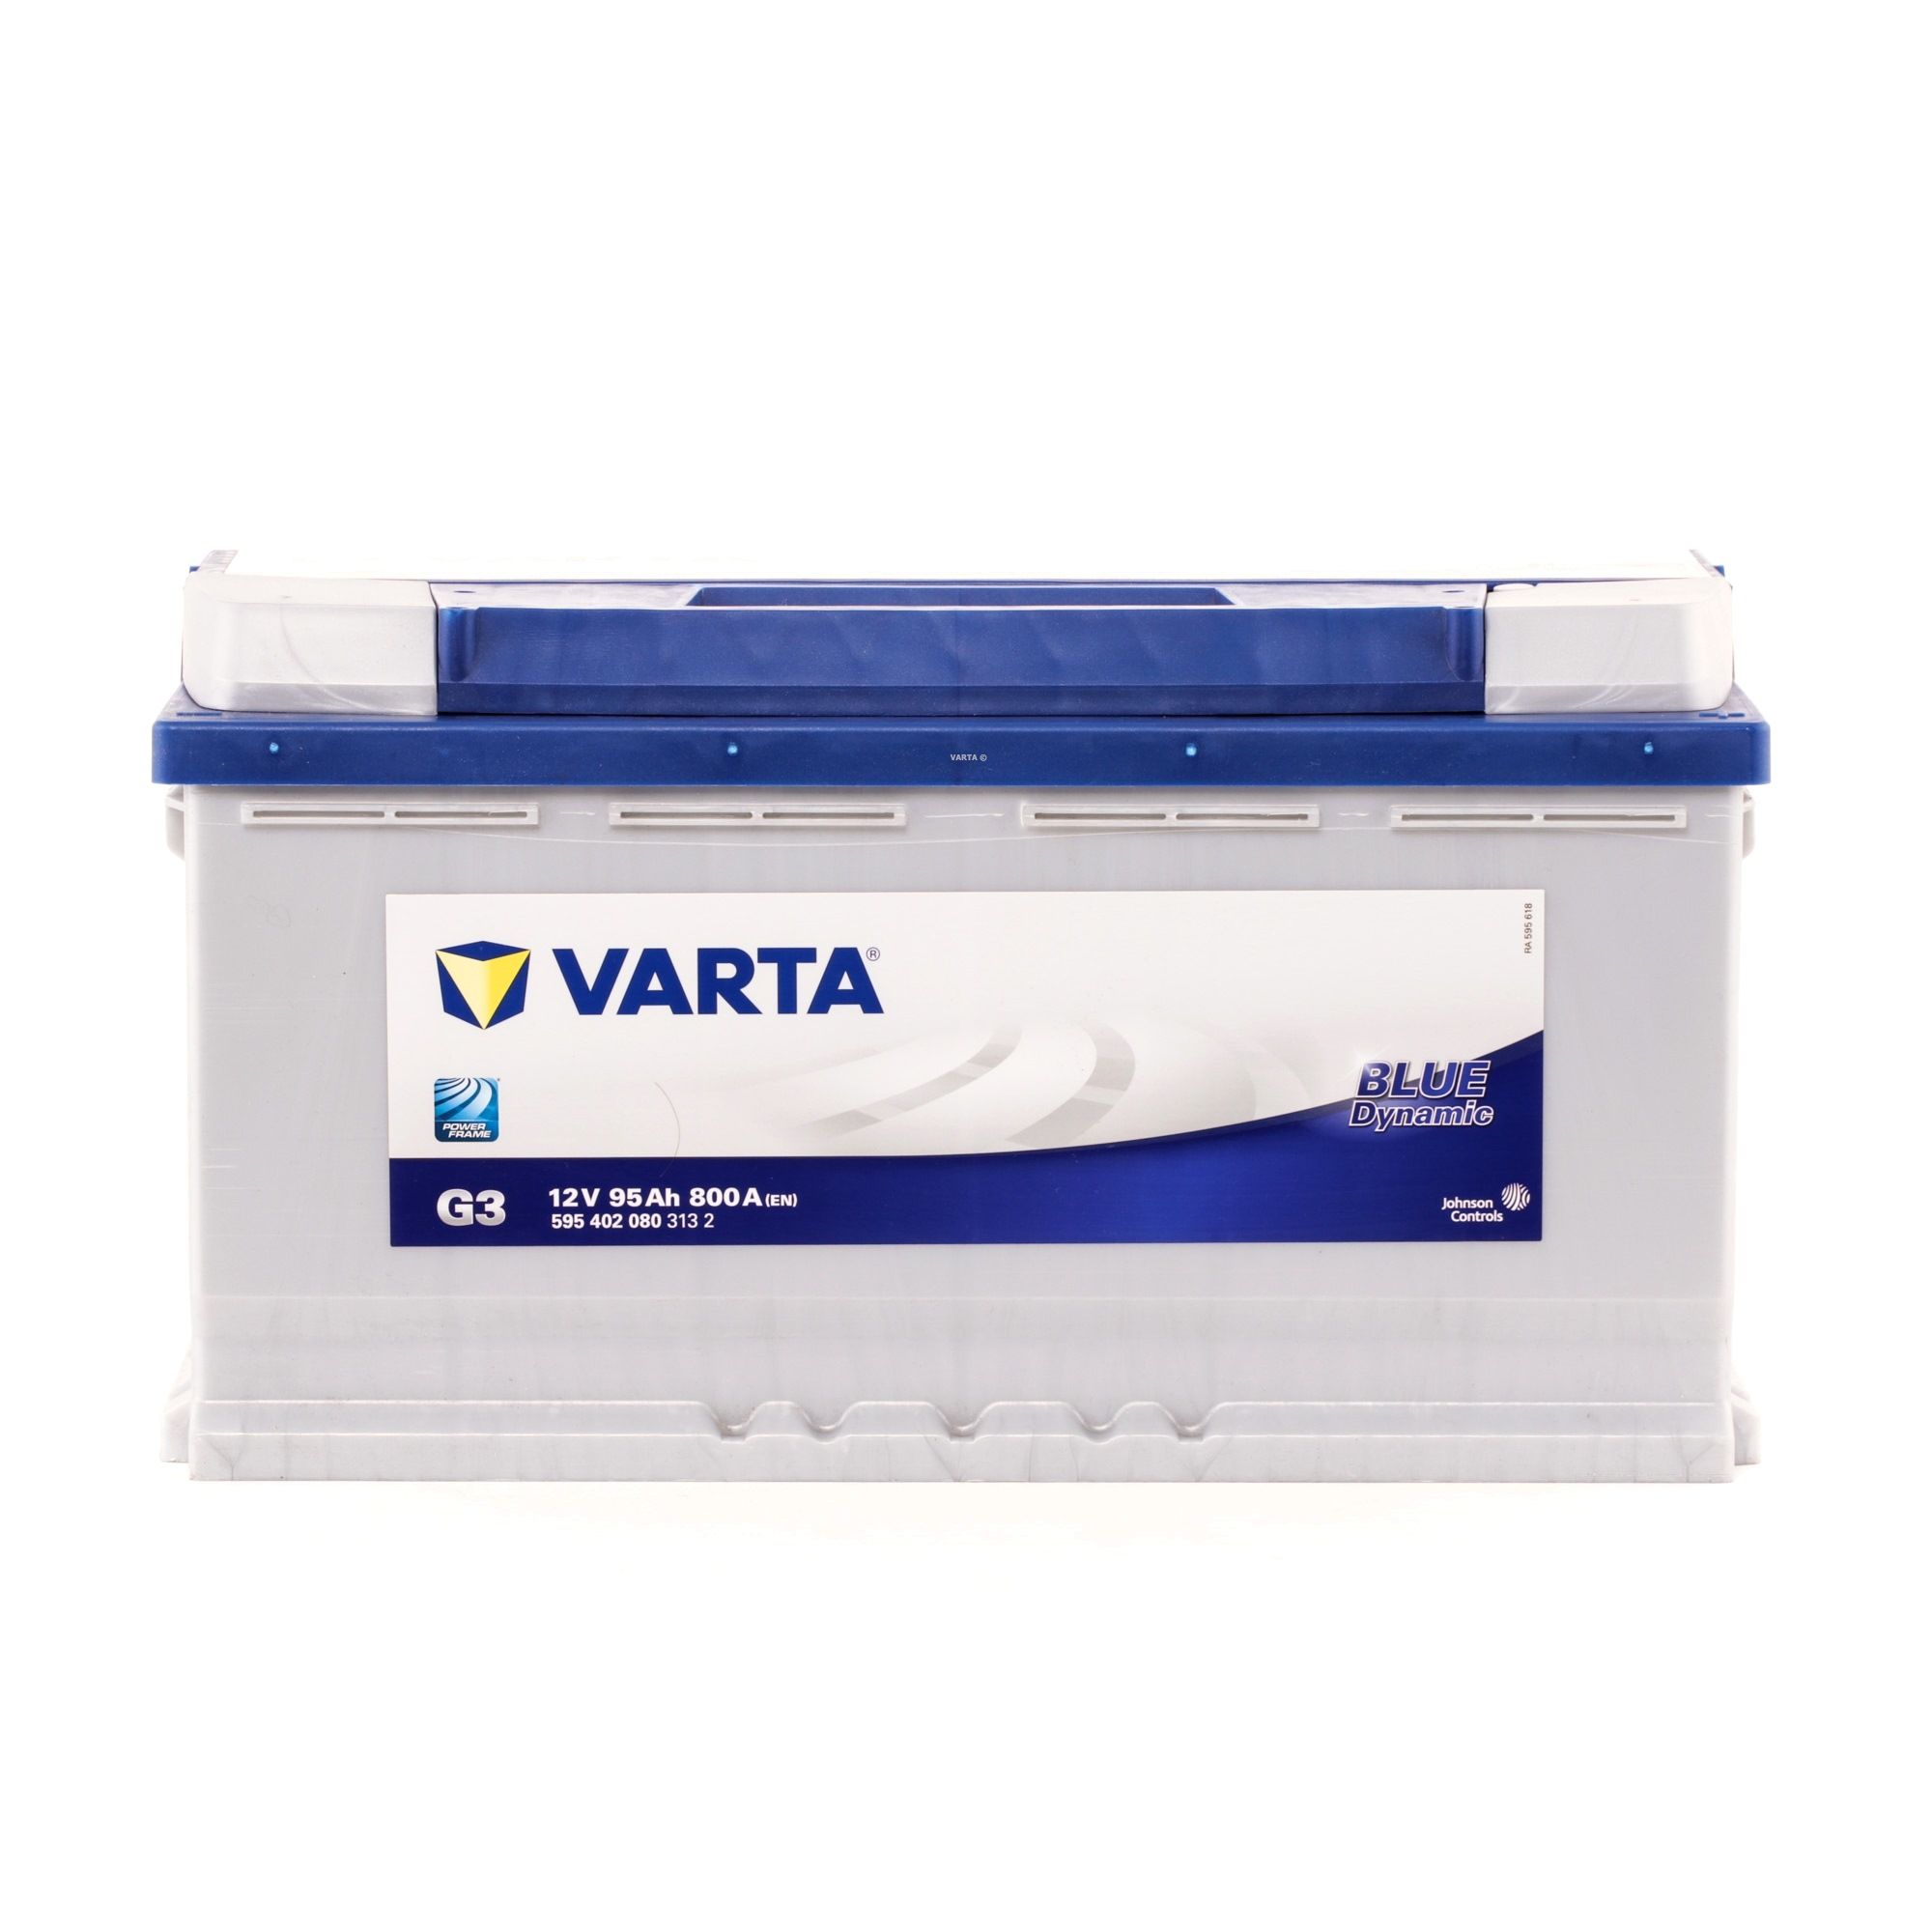 VARTA Starterbatterie 5954020803132